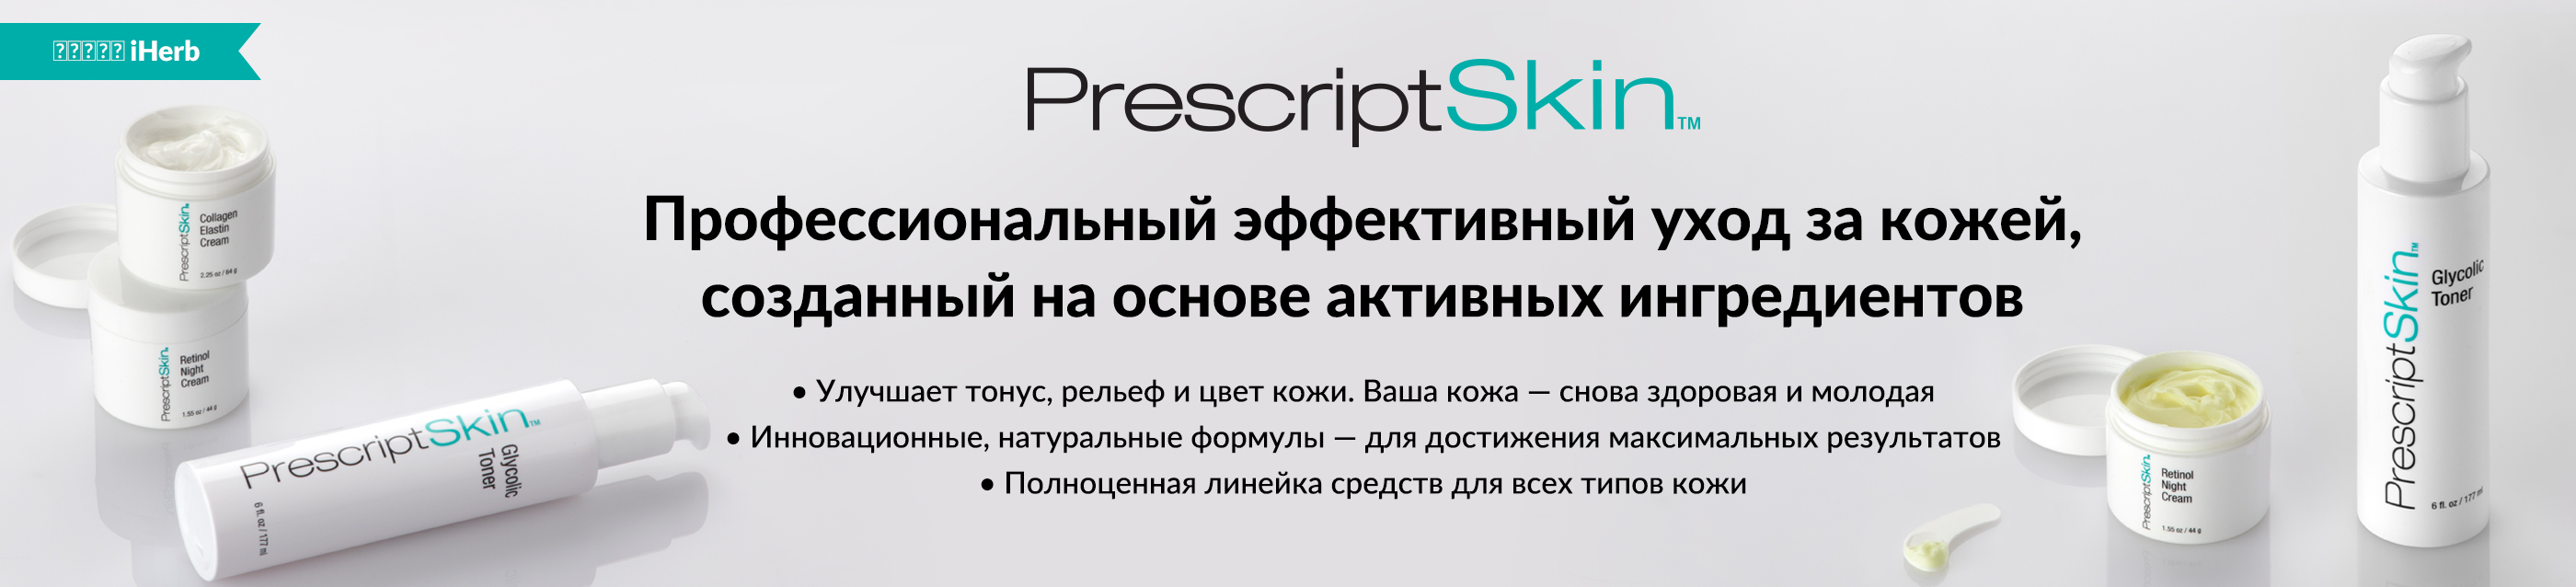 PrescriptSkin